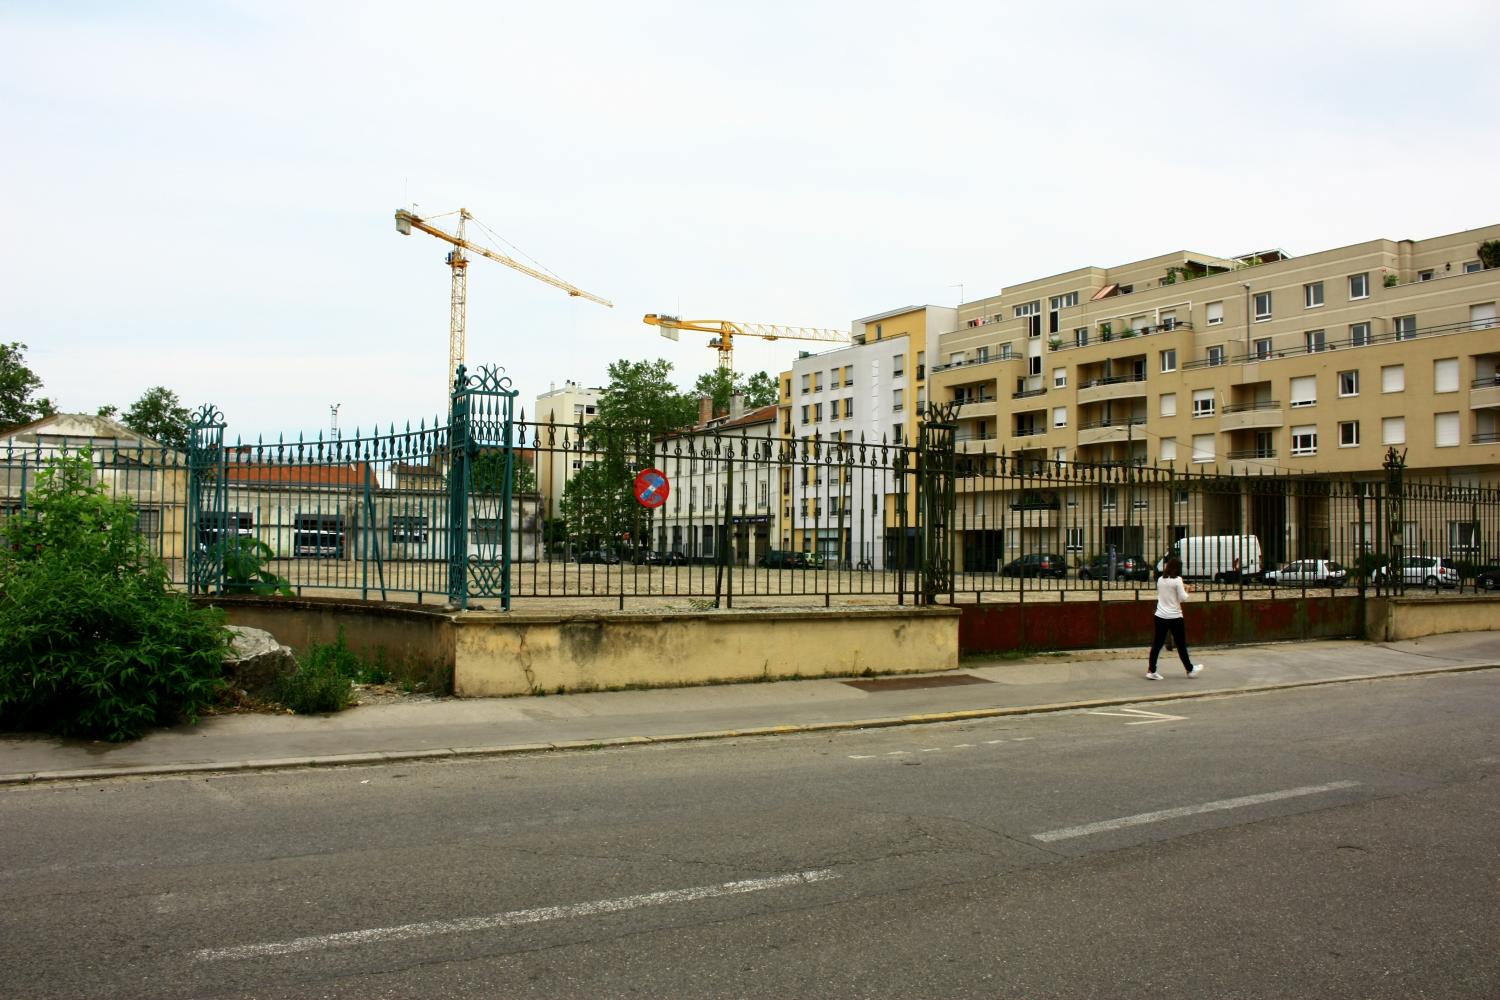 Arsenal dit "ateliers de construction de Lyon", 2e arrondissement